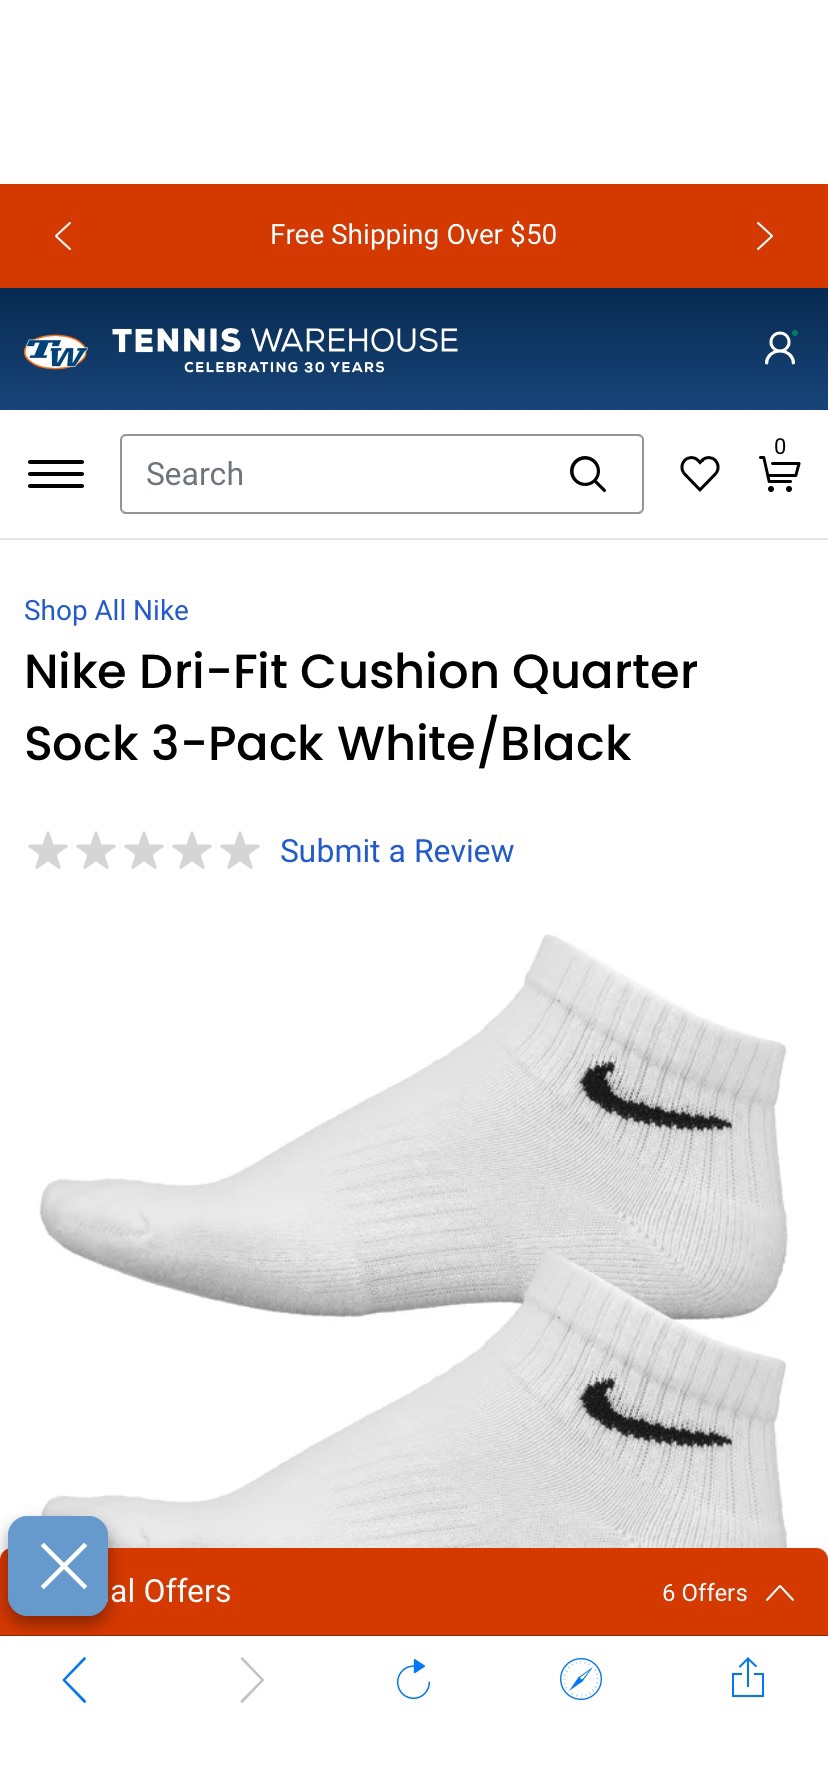 Nike Dri-Fit Cushion Quarter Sock 3-Pack White/Black | Tennis Warehouse